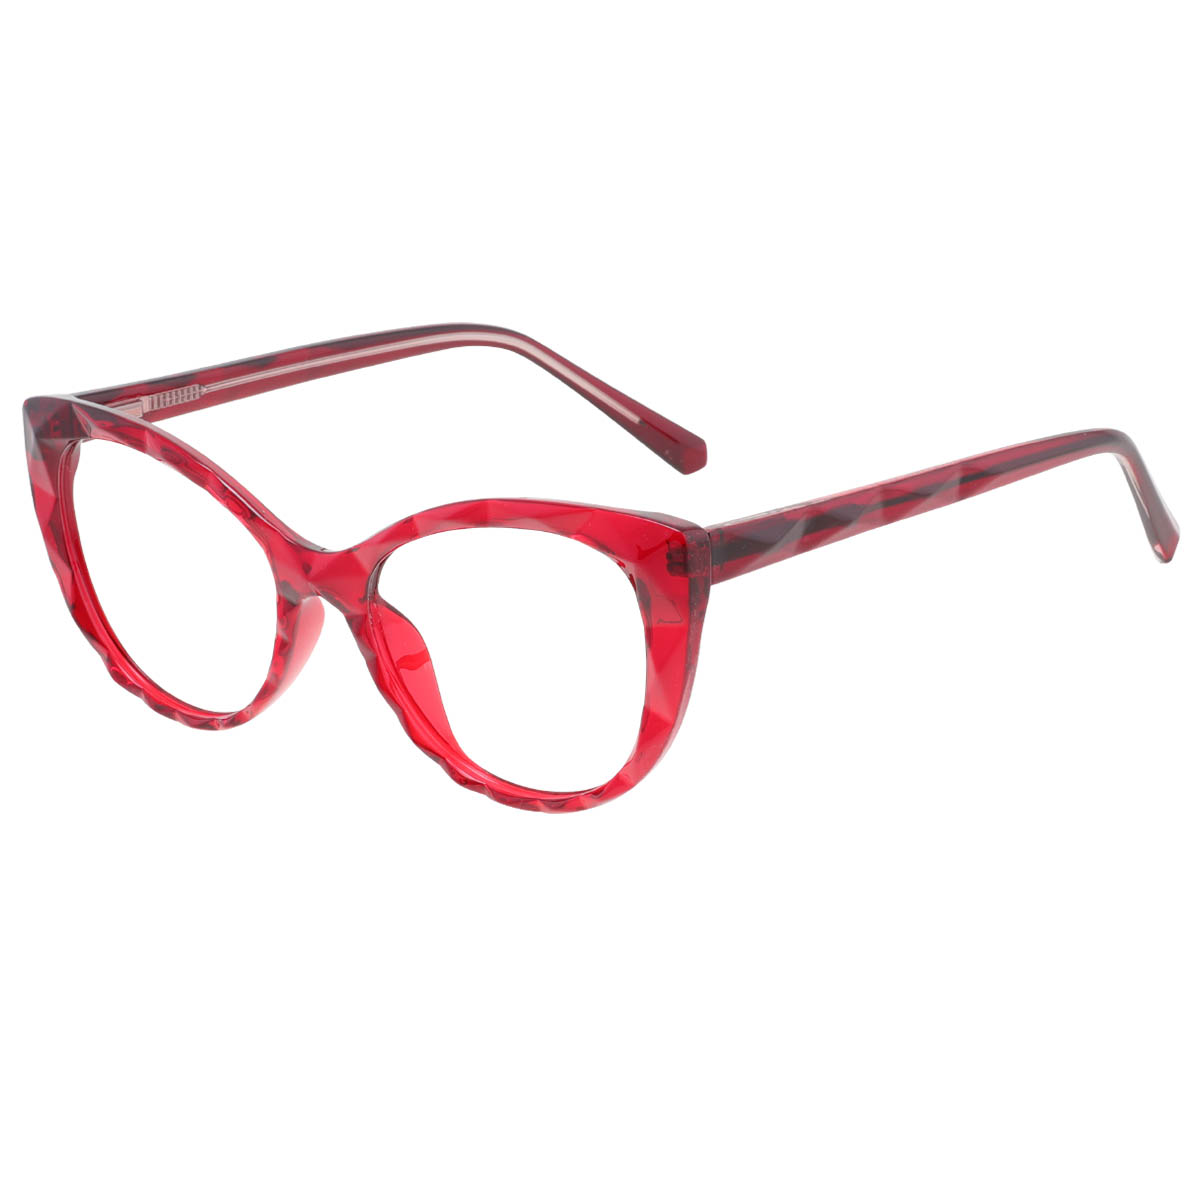 Briseis - Cat-eye Transparent-Red Reading Glasses for Women